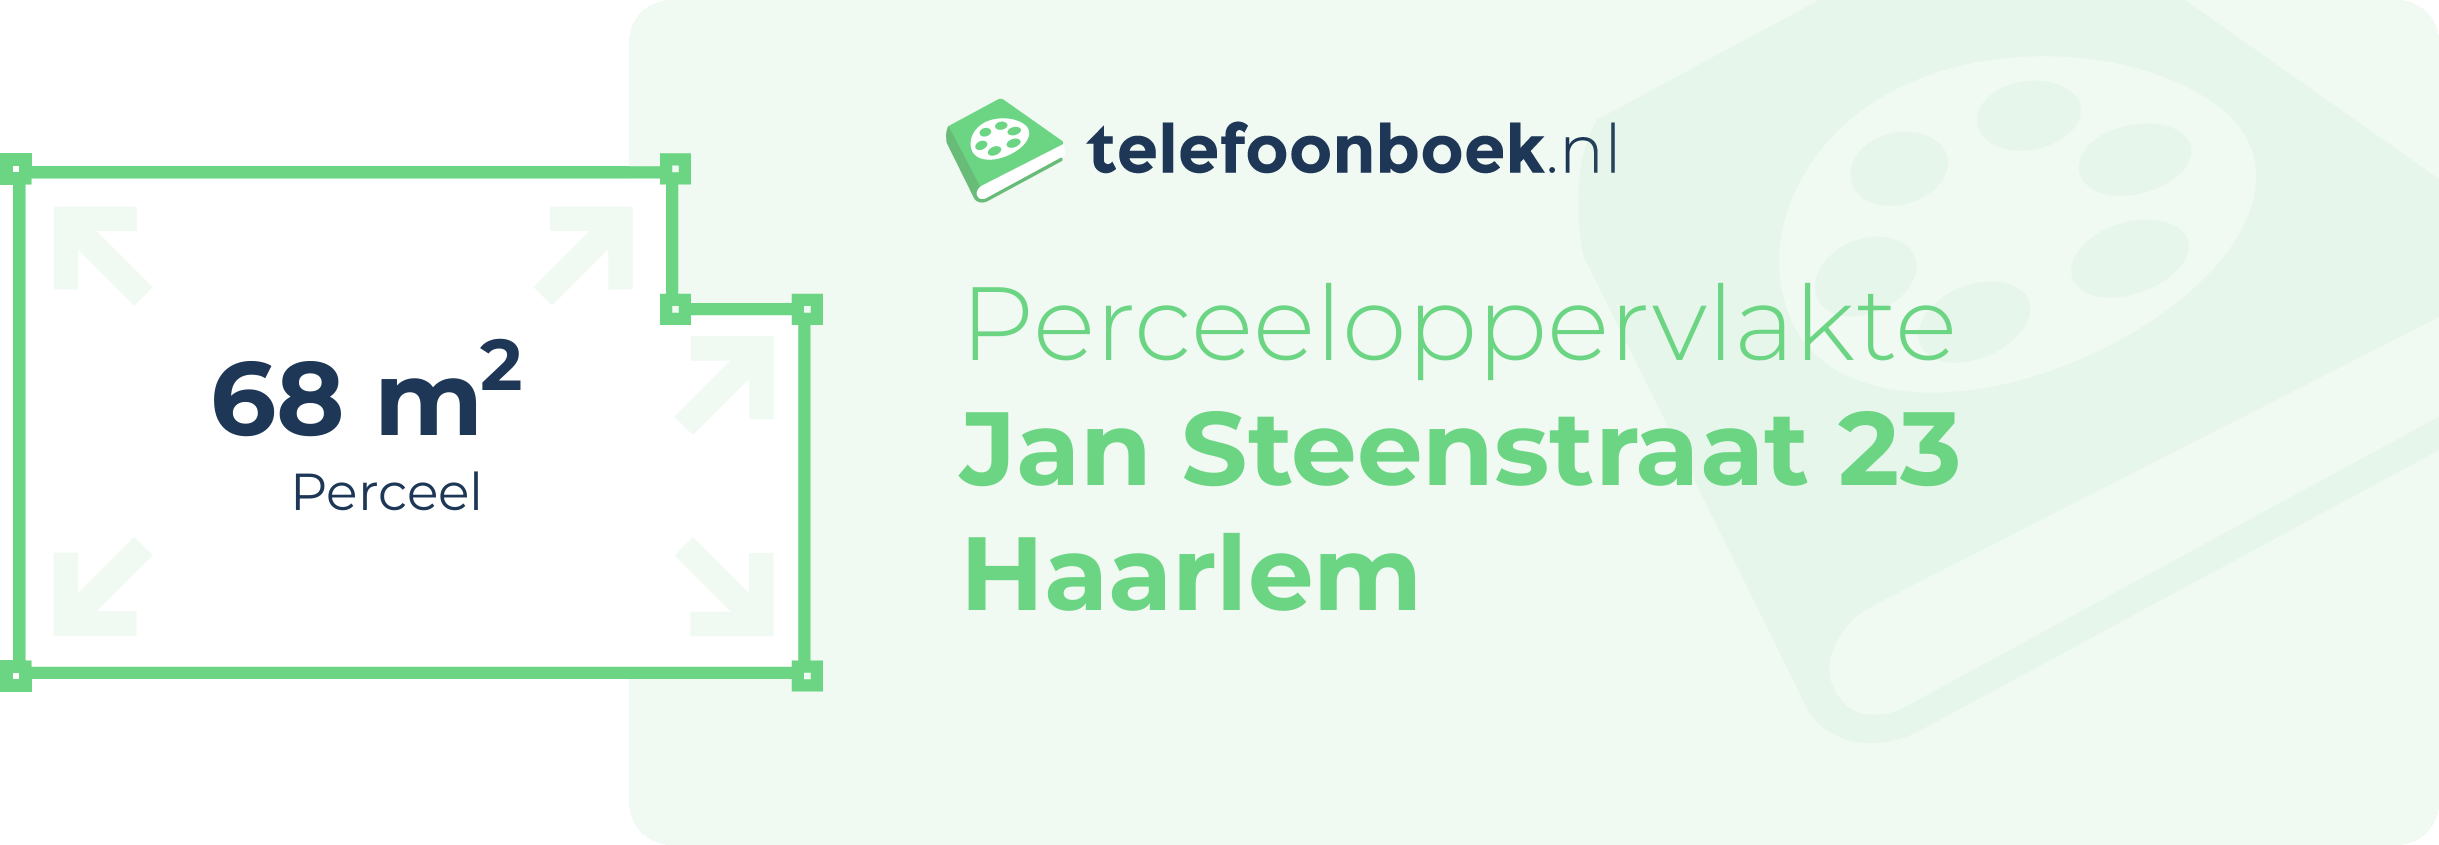 Perceeloppervlakte Jan Steenstraat 23 Haarlem